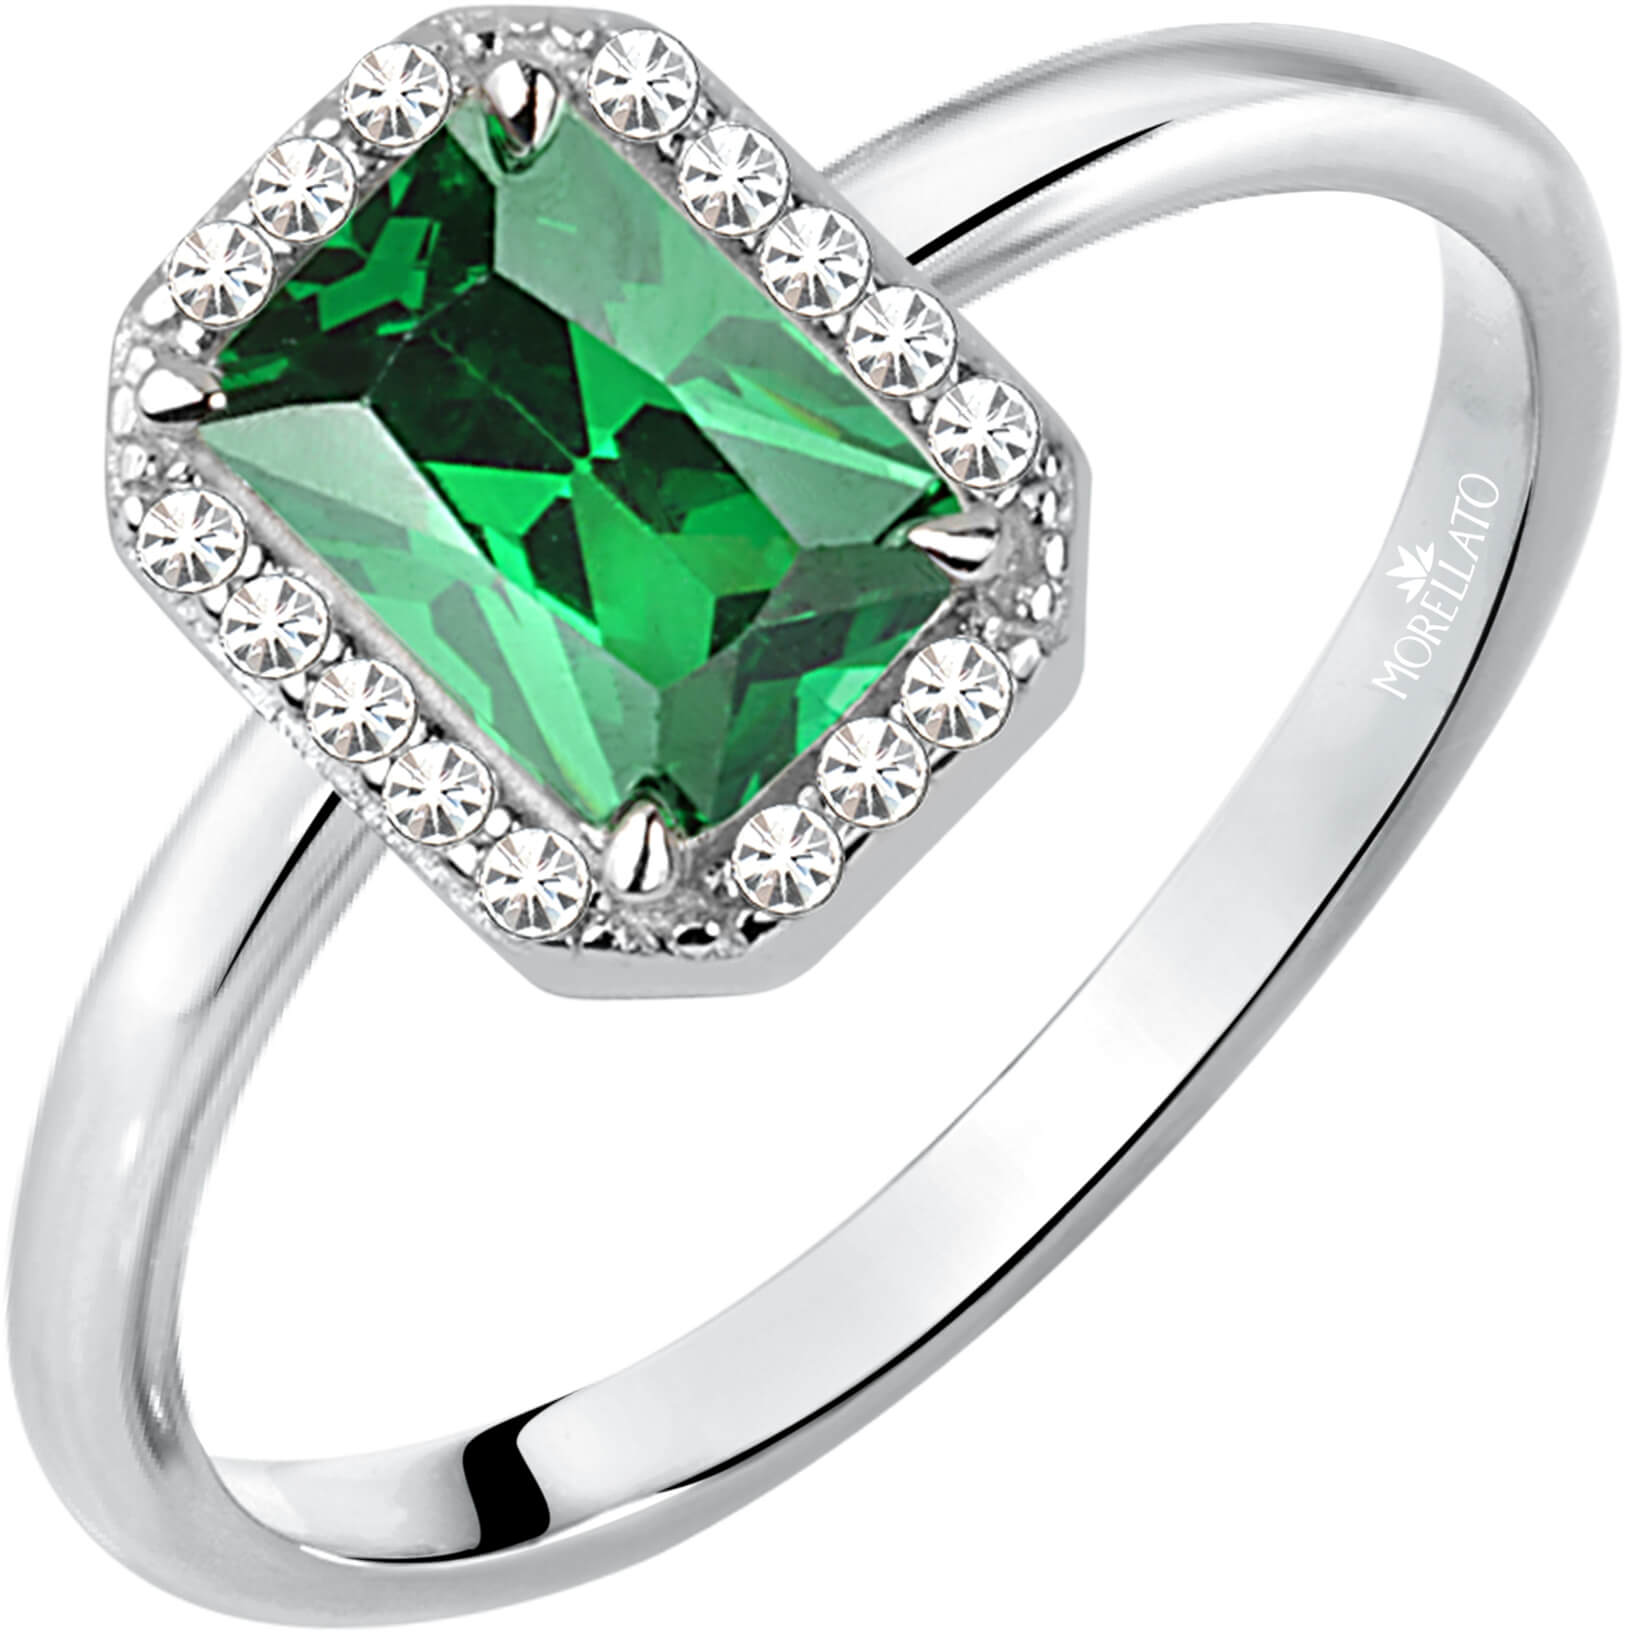 Morellato Třpytivý stříbrný prsten se zeleným kamínkem Tesori SAIW76 56 mm